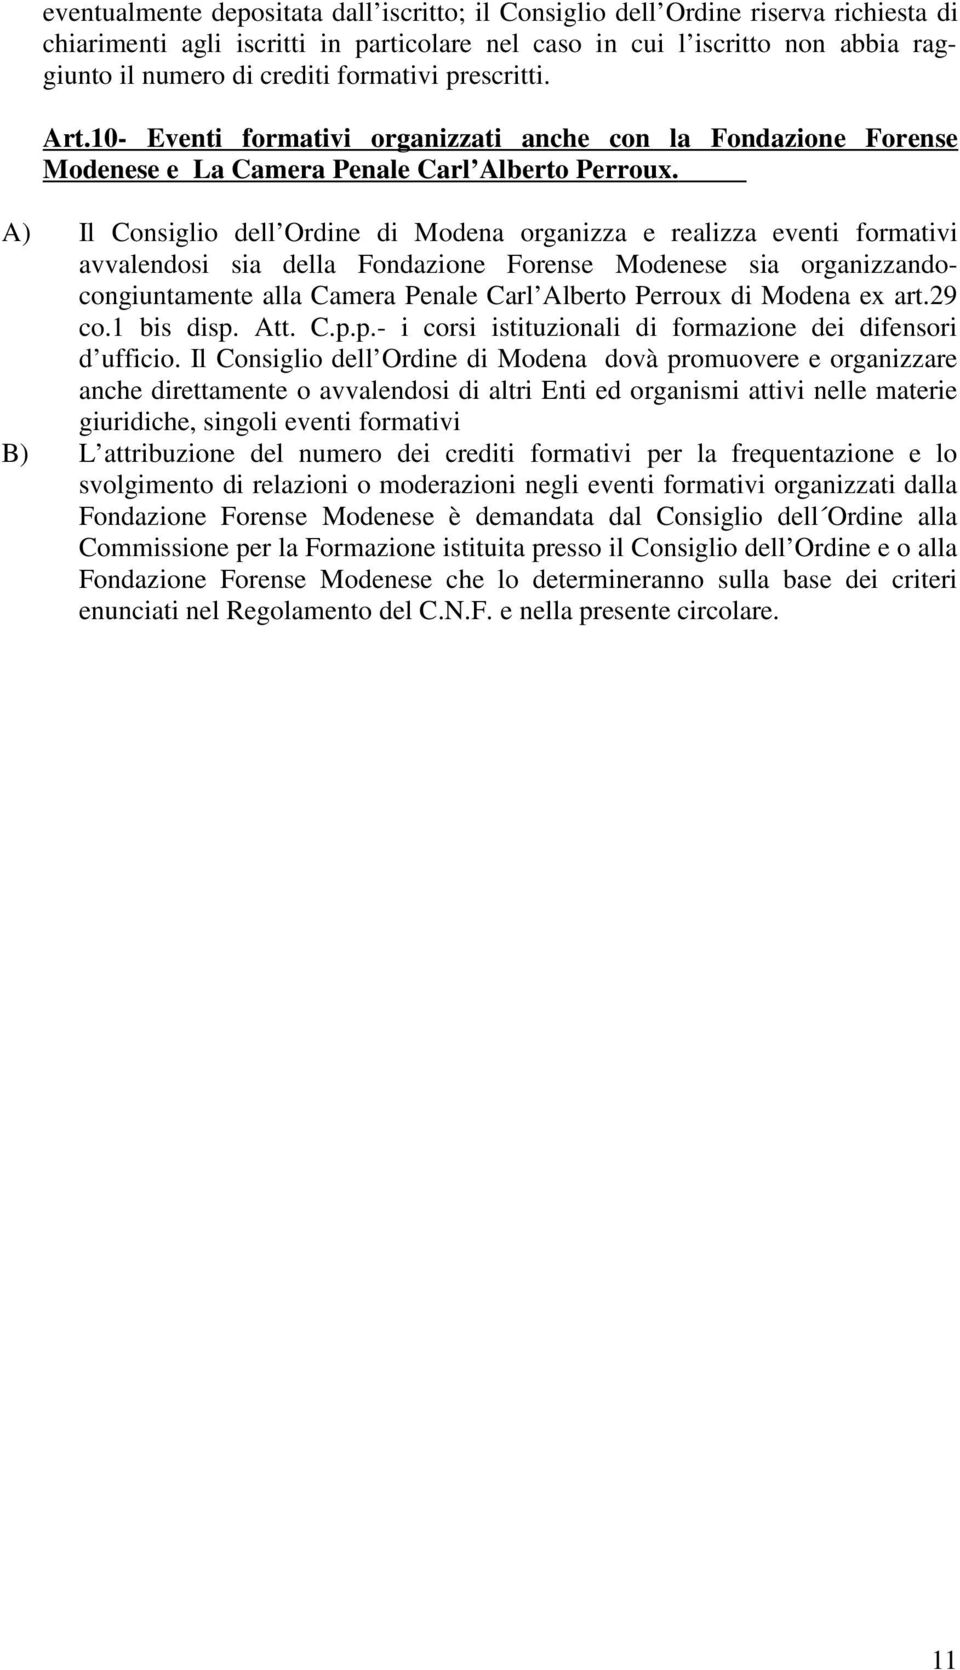 A) Il Consiglio dell Ordine di Modena organizza e realizza eventi formativi avvalendosi sia della Fondazione Forense Modenese sia organizzandocongiuntamente alla Camera Penale Carl Alberto Perroux di